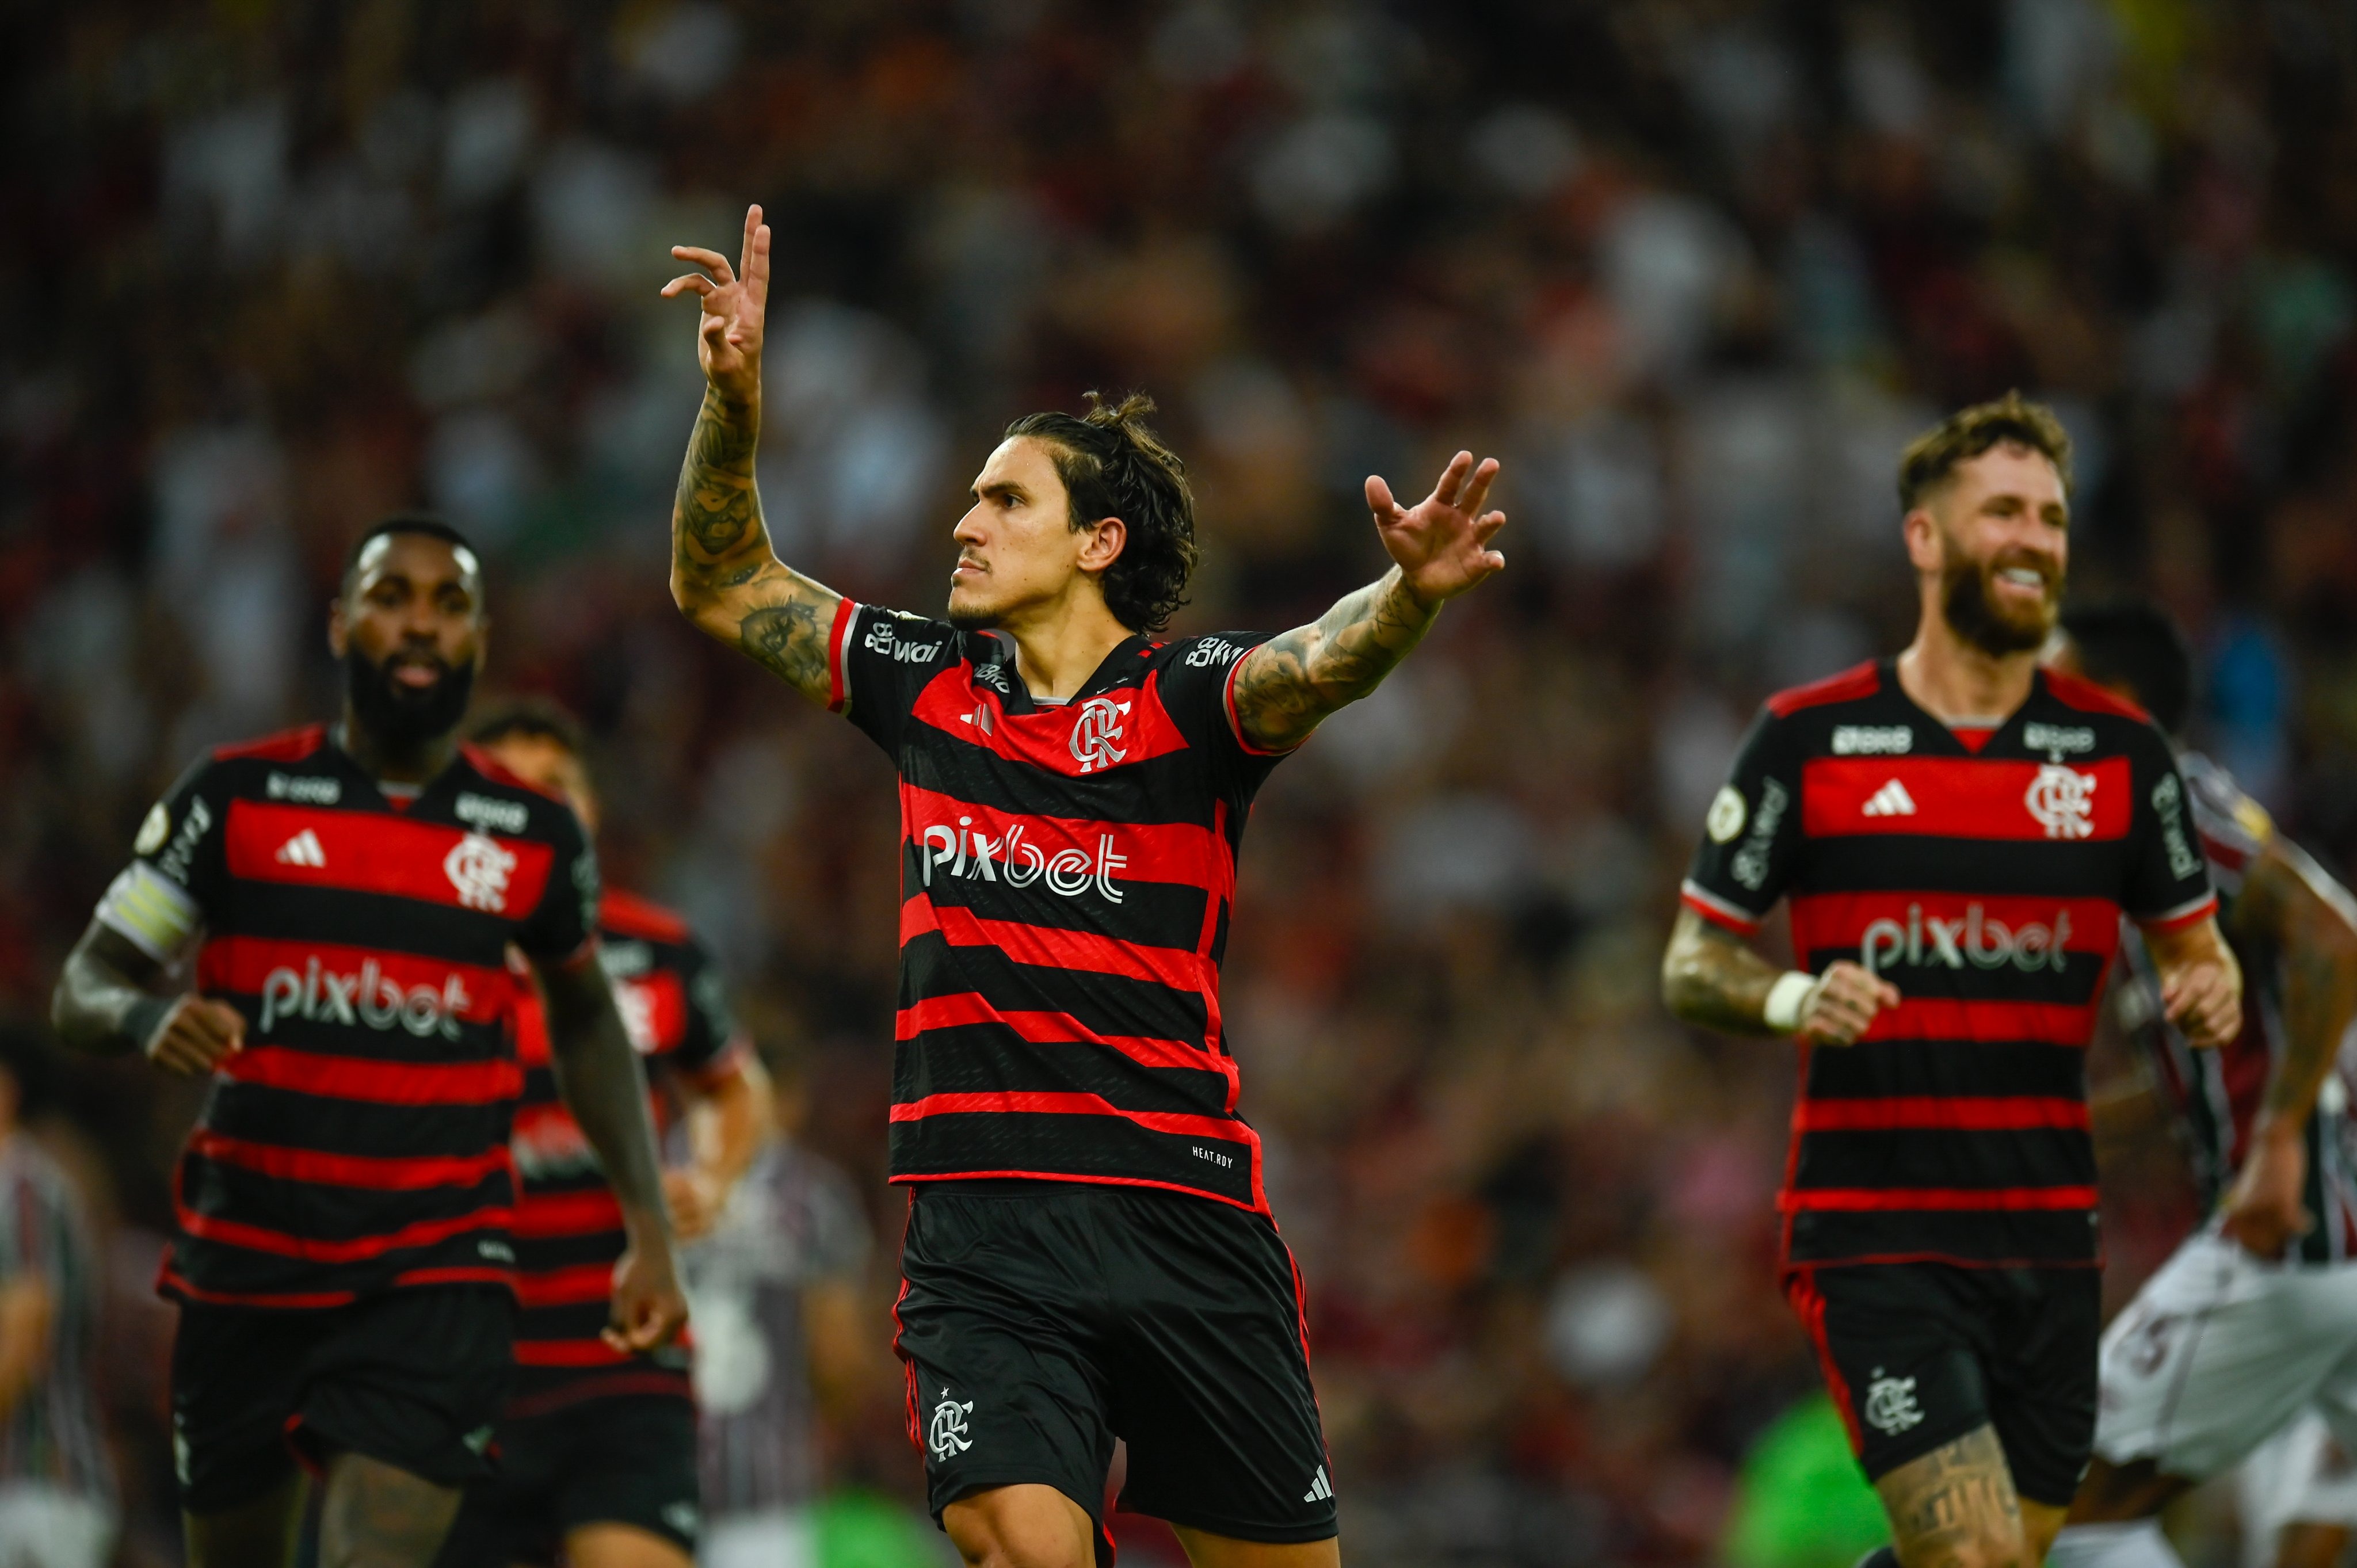 Pênalti para o Flamengo foi bem marcado? Colunistas divergem